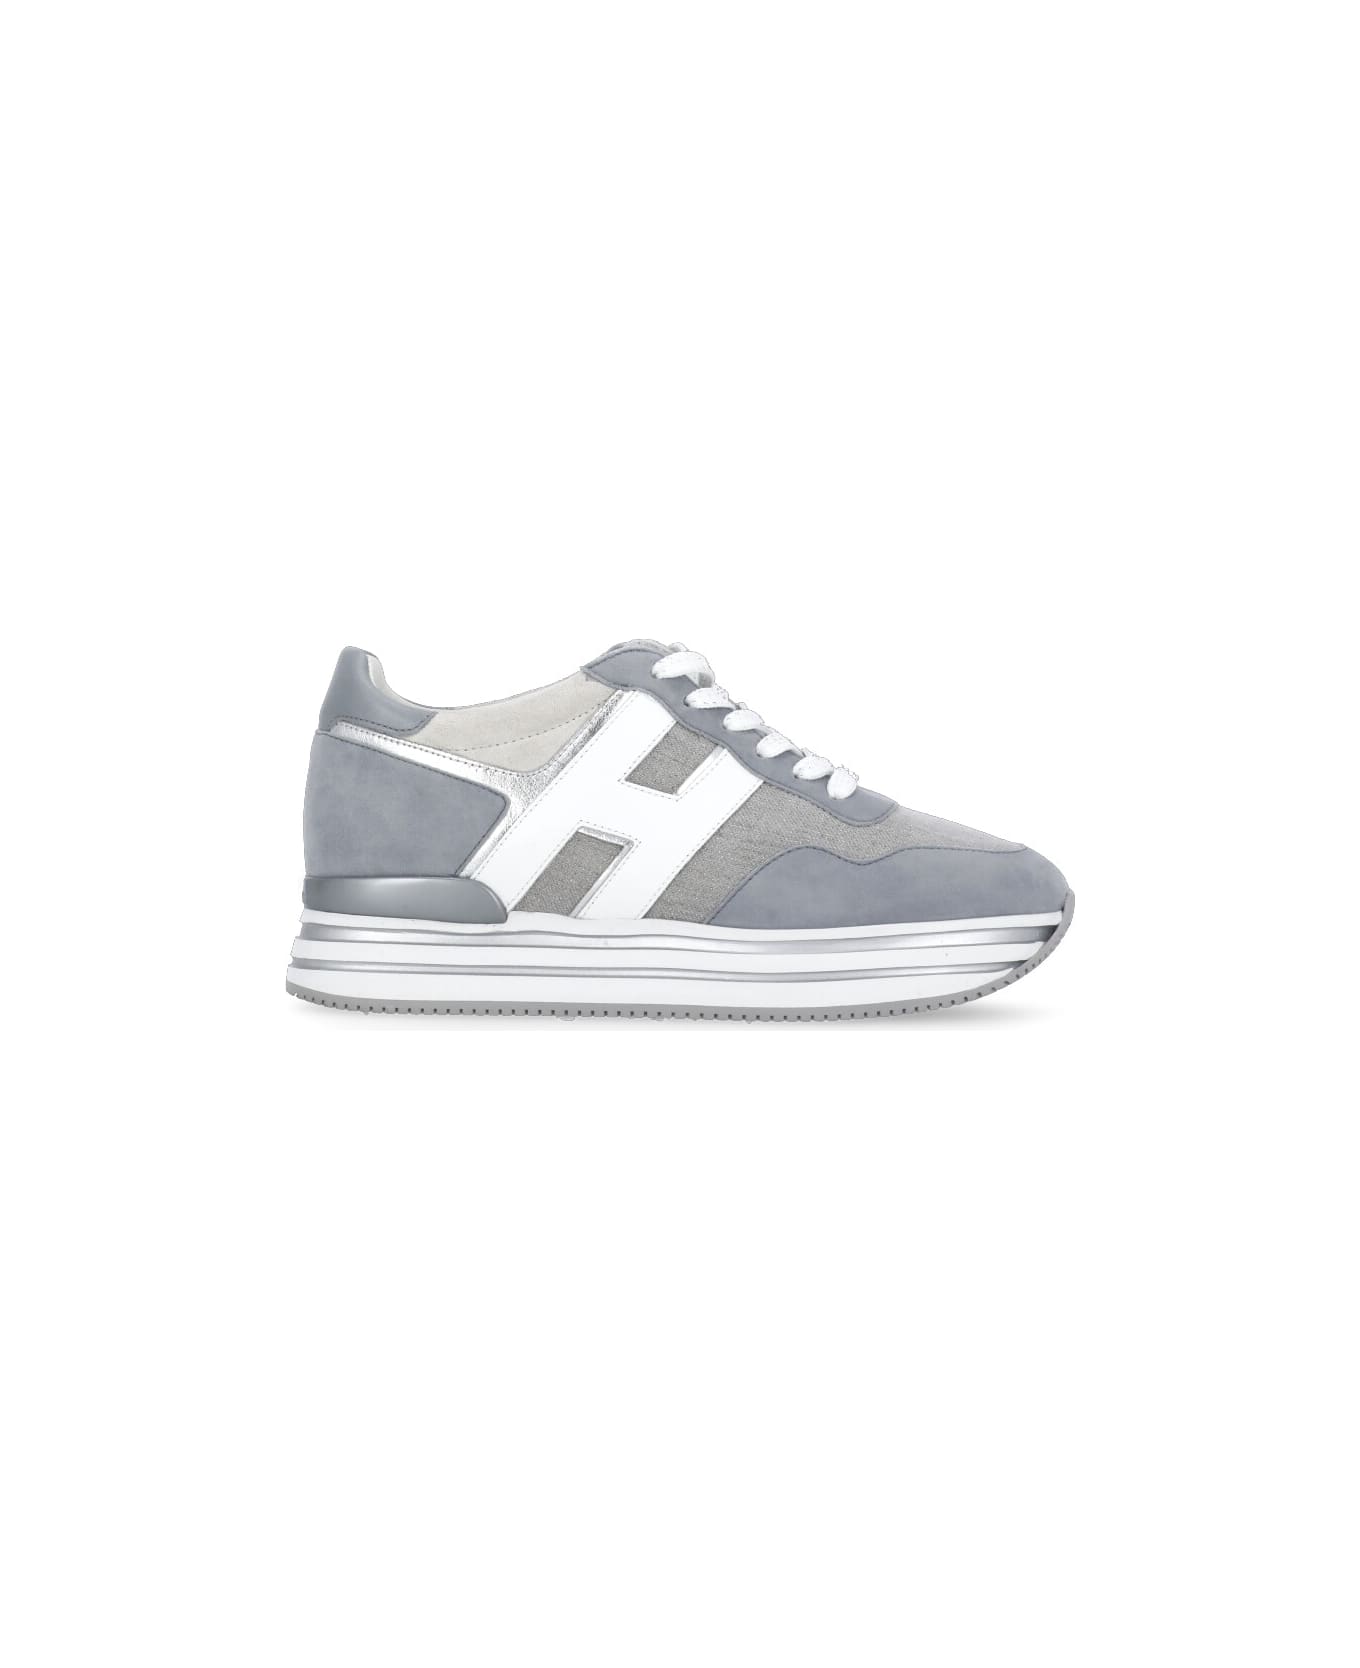 Hogan H483 Sneakers - Grey